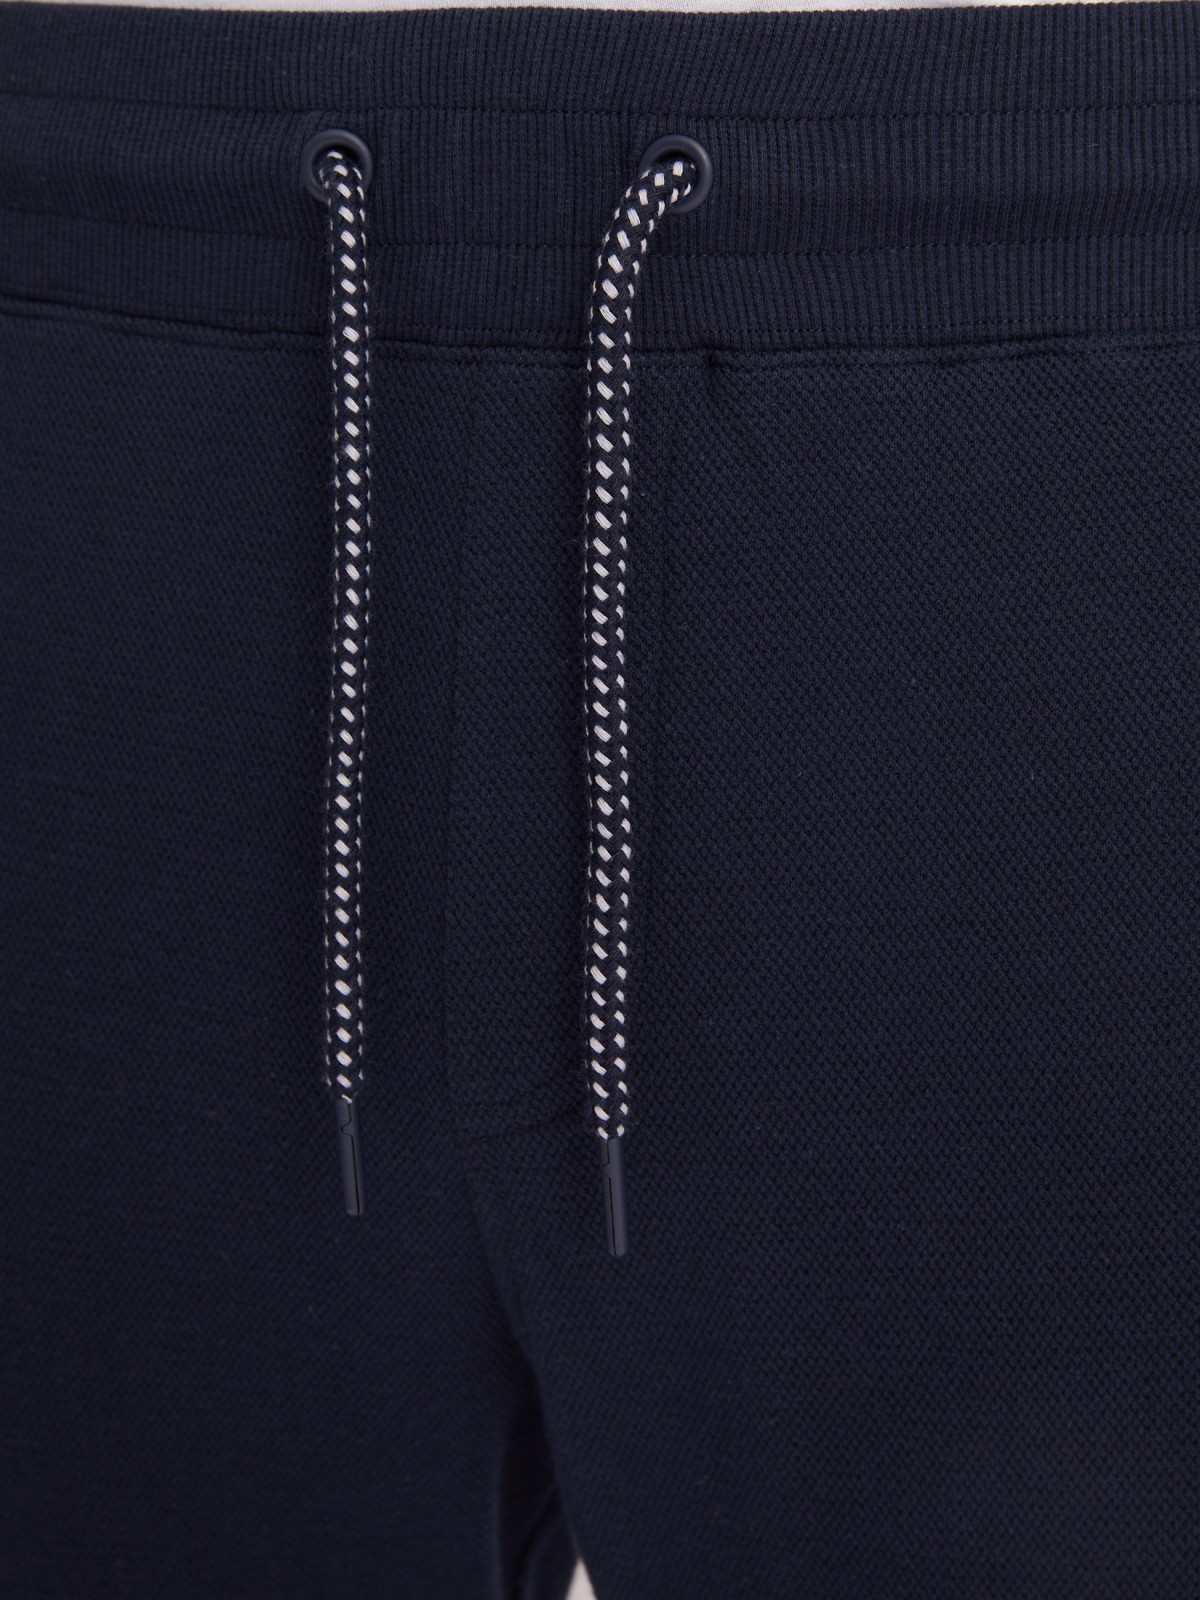 Трикотажные брюки-джоггеры в спортивном стиле zolla 21331762F012, цвет синий, размер XXL - фото 4